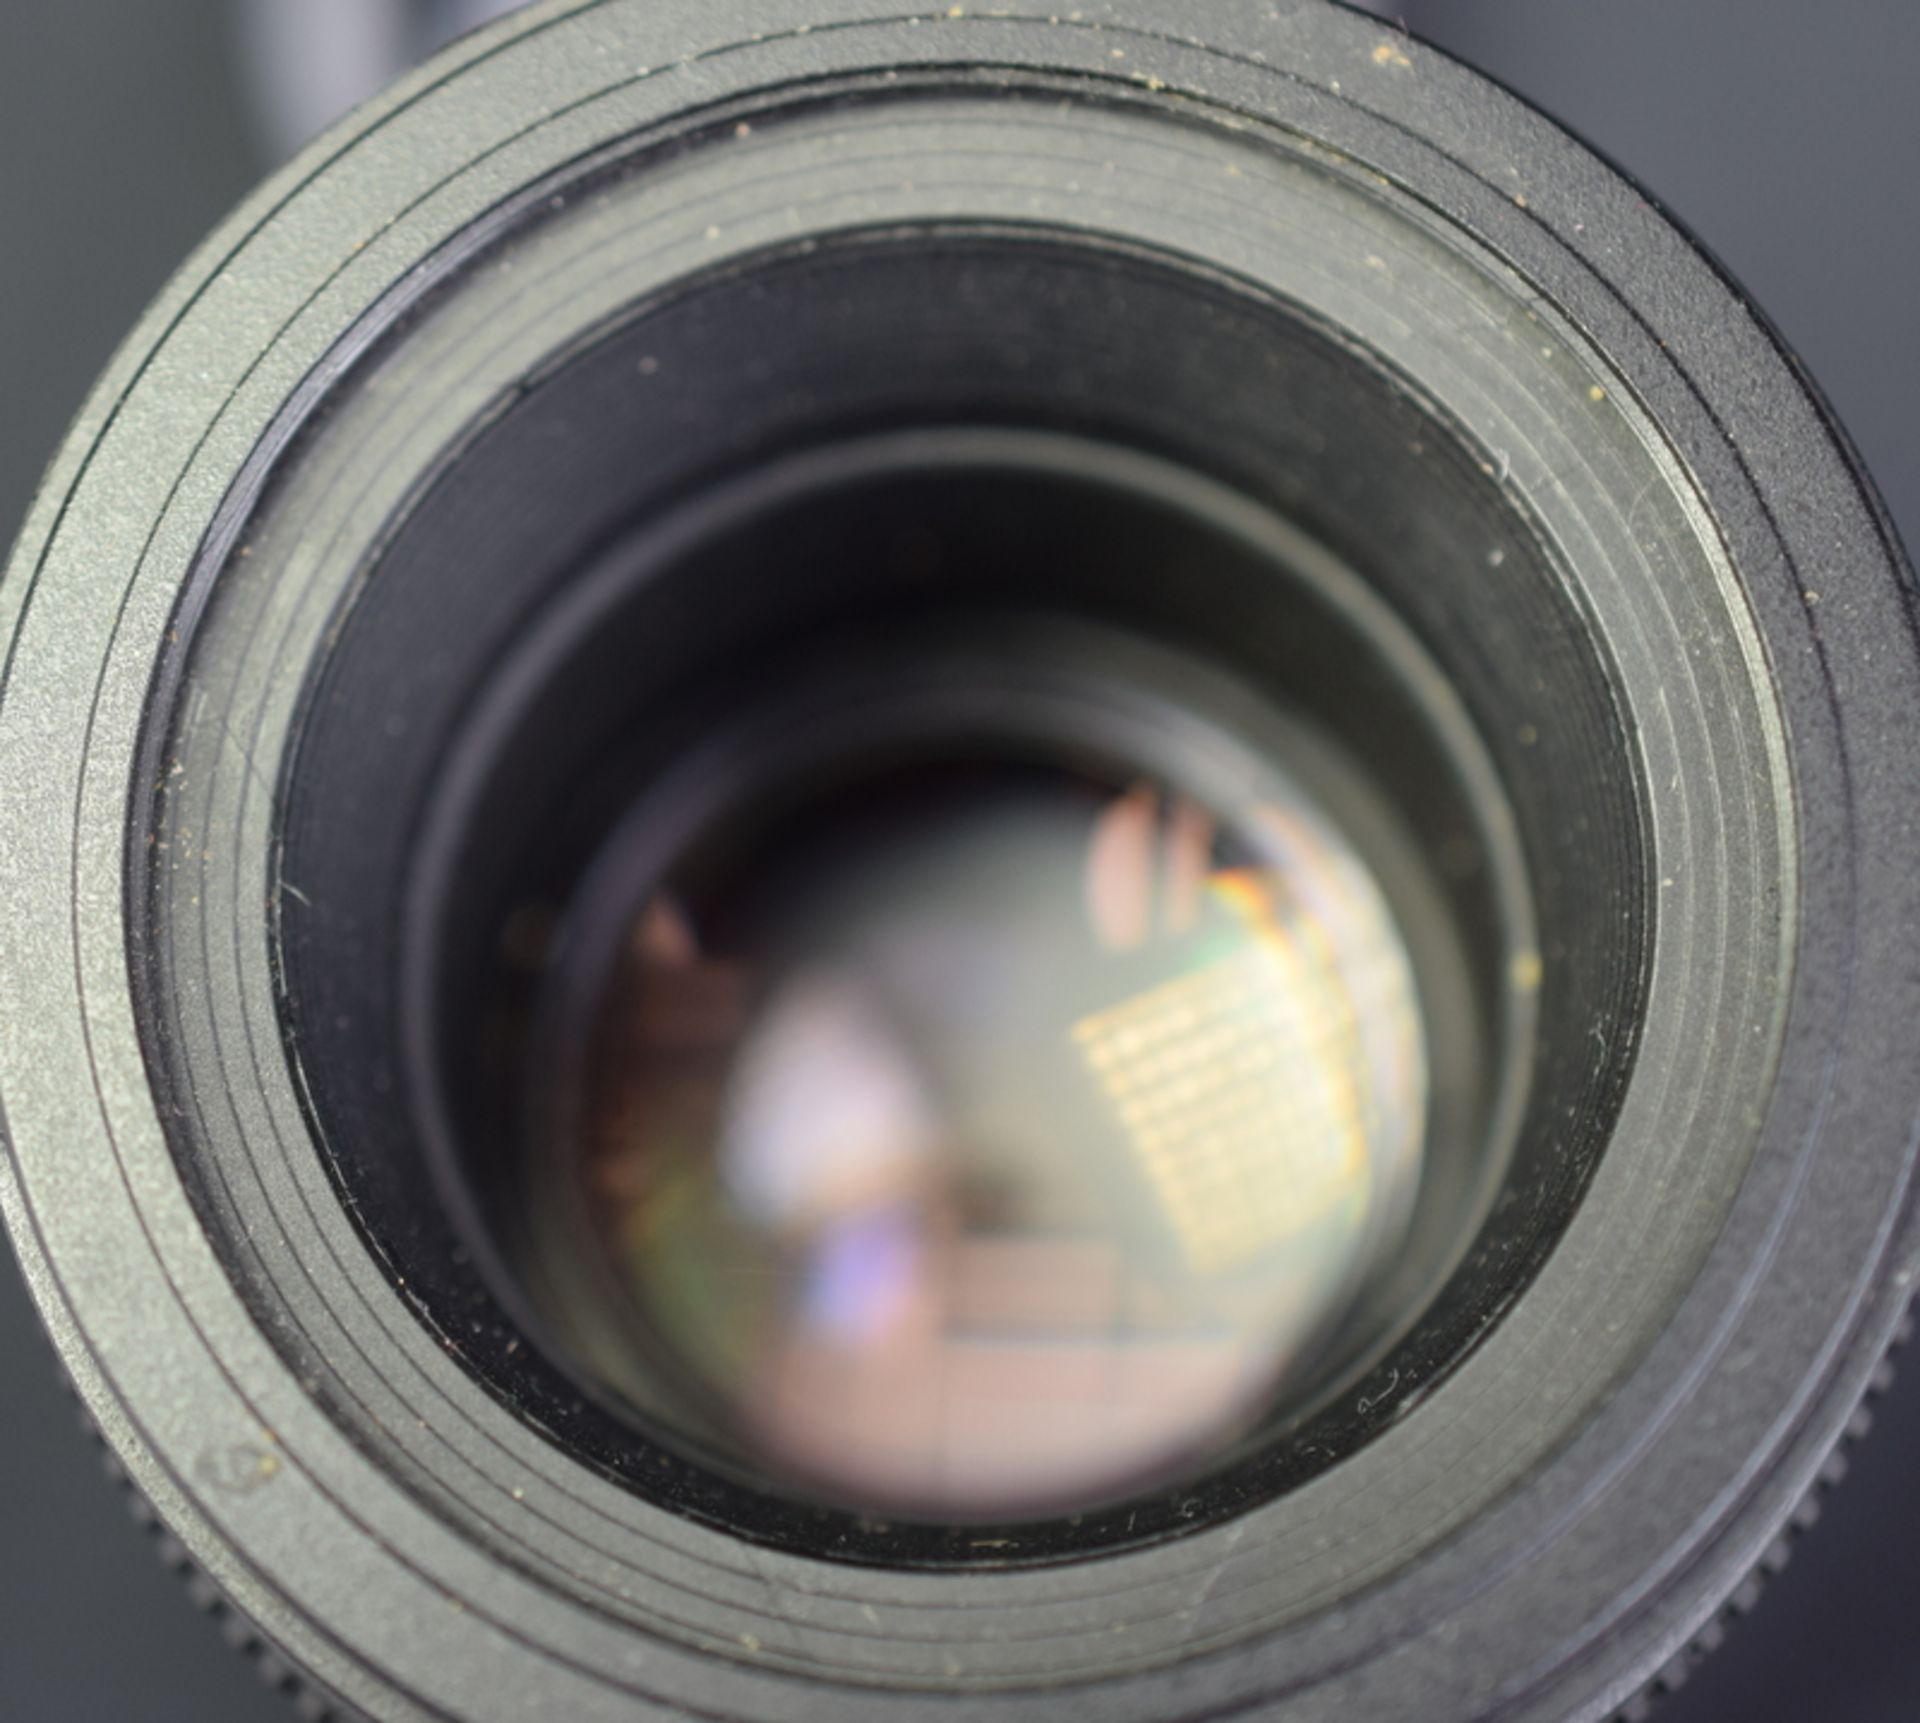 Tamron SP AF 90mm F/2.8 Di Macro 1:1 Lens - Nikon Fit - Image 3 of 5